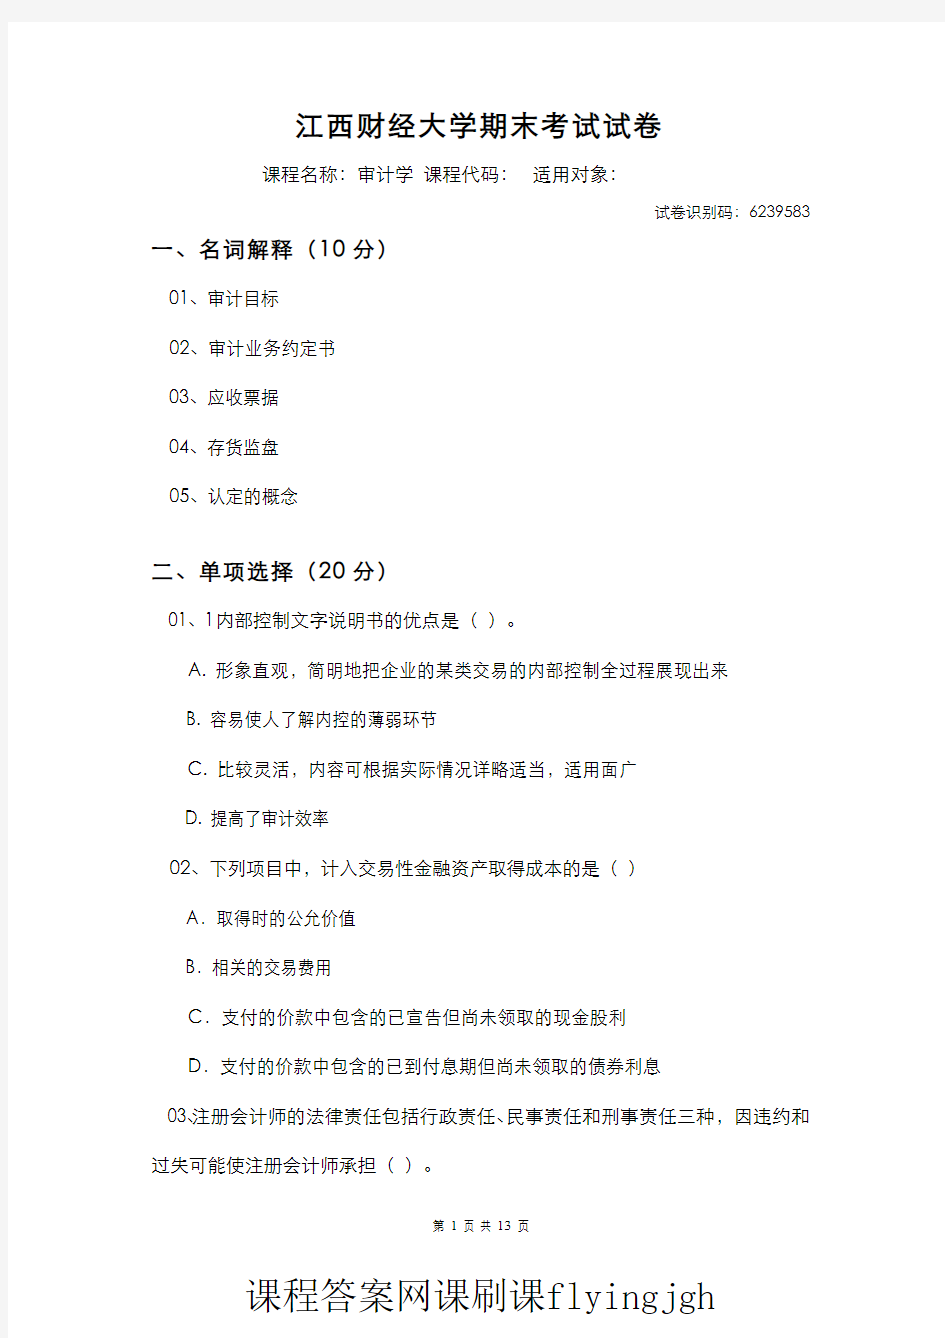 中国大学MOOC慕课爱课程(20)--模拟试卷(试题库系统生成)03网课刷课